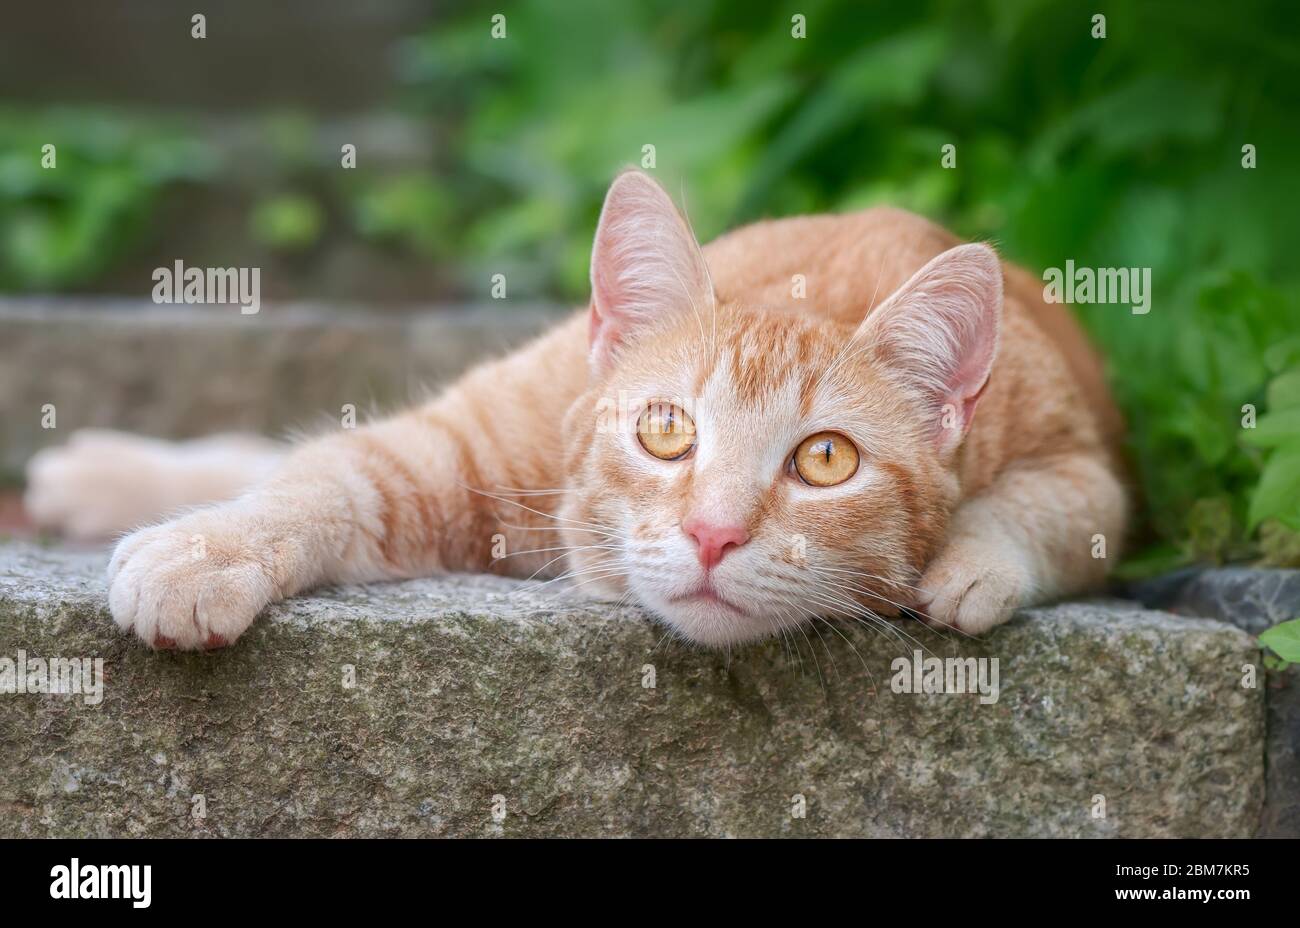 Cute giovane gatto zenzero, europeo Shorthair, sdraiato su un passo di pietra in un giardino e guardando curiosamente con gli occhi ampi di colore arancione, Germania Foto Stock